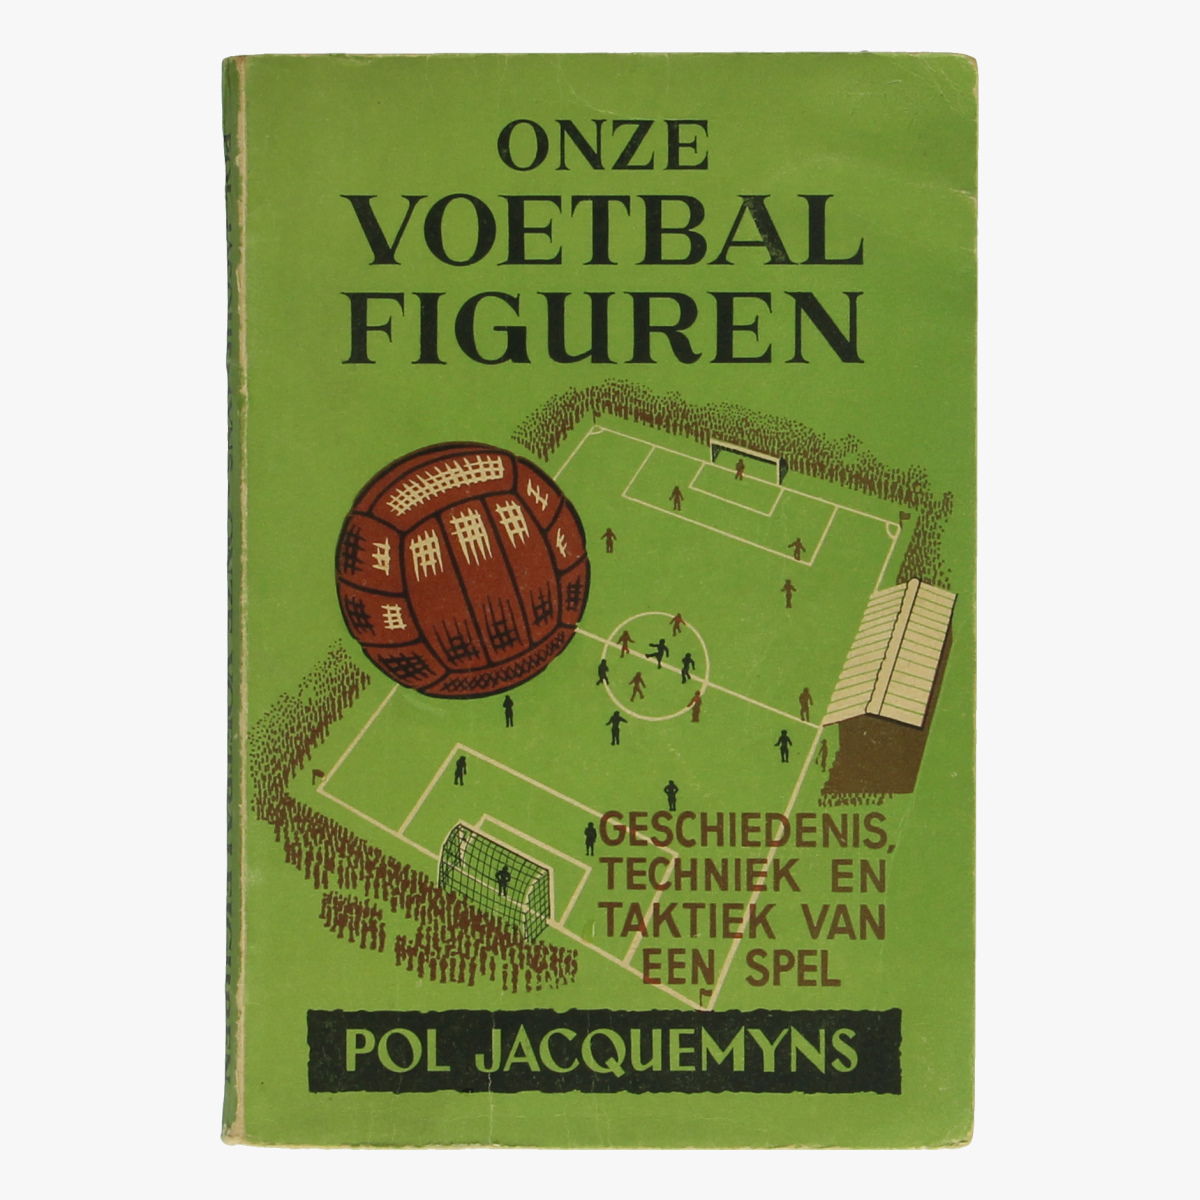 Afbeeldingen van Onze voetbalfiguren. Boek. Pol Jacquemyns 1942